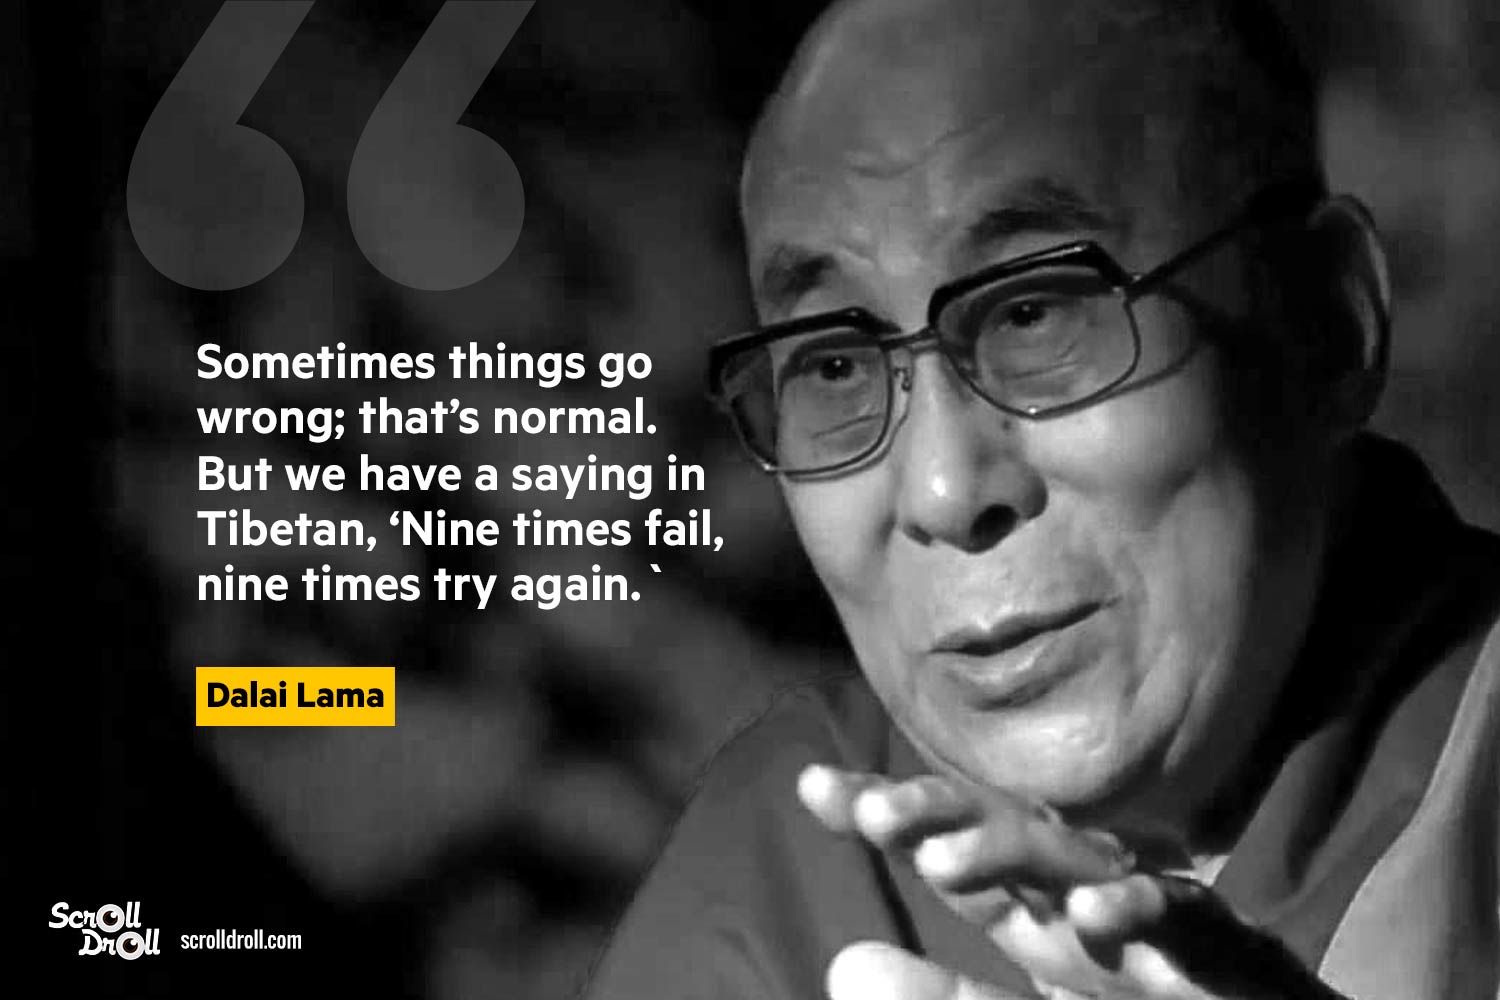 dalai lama quotes on world peace